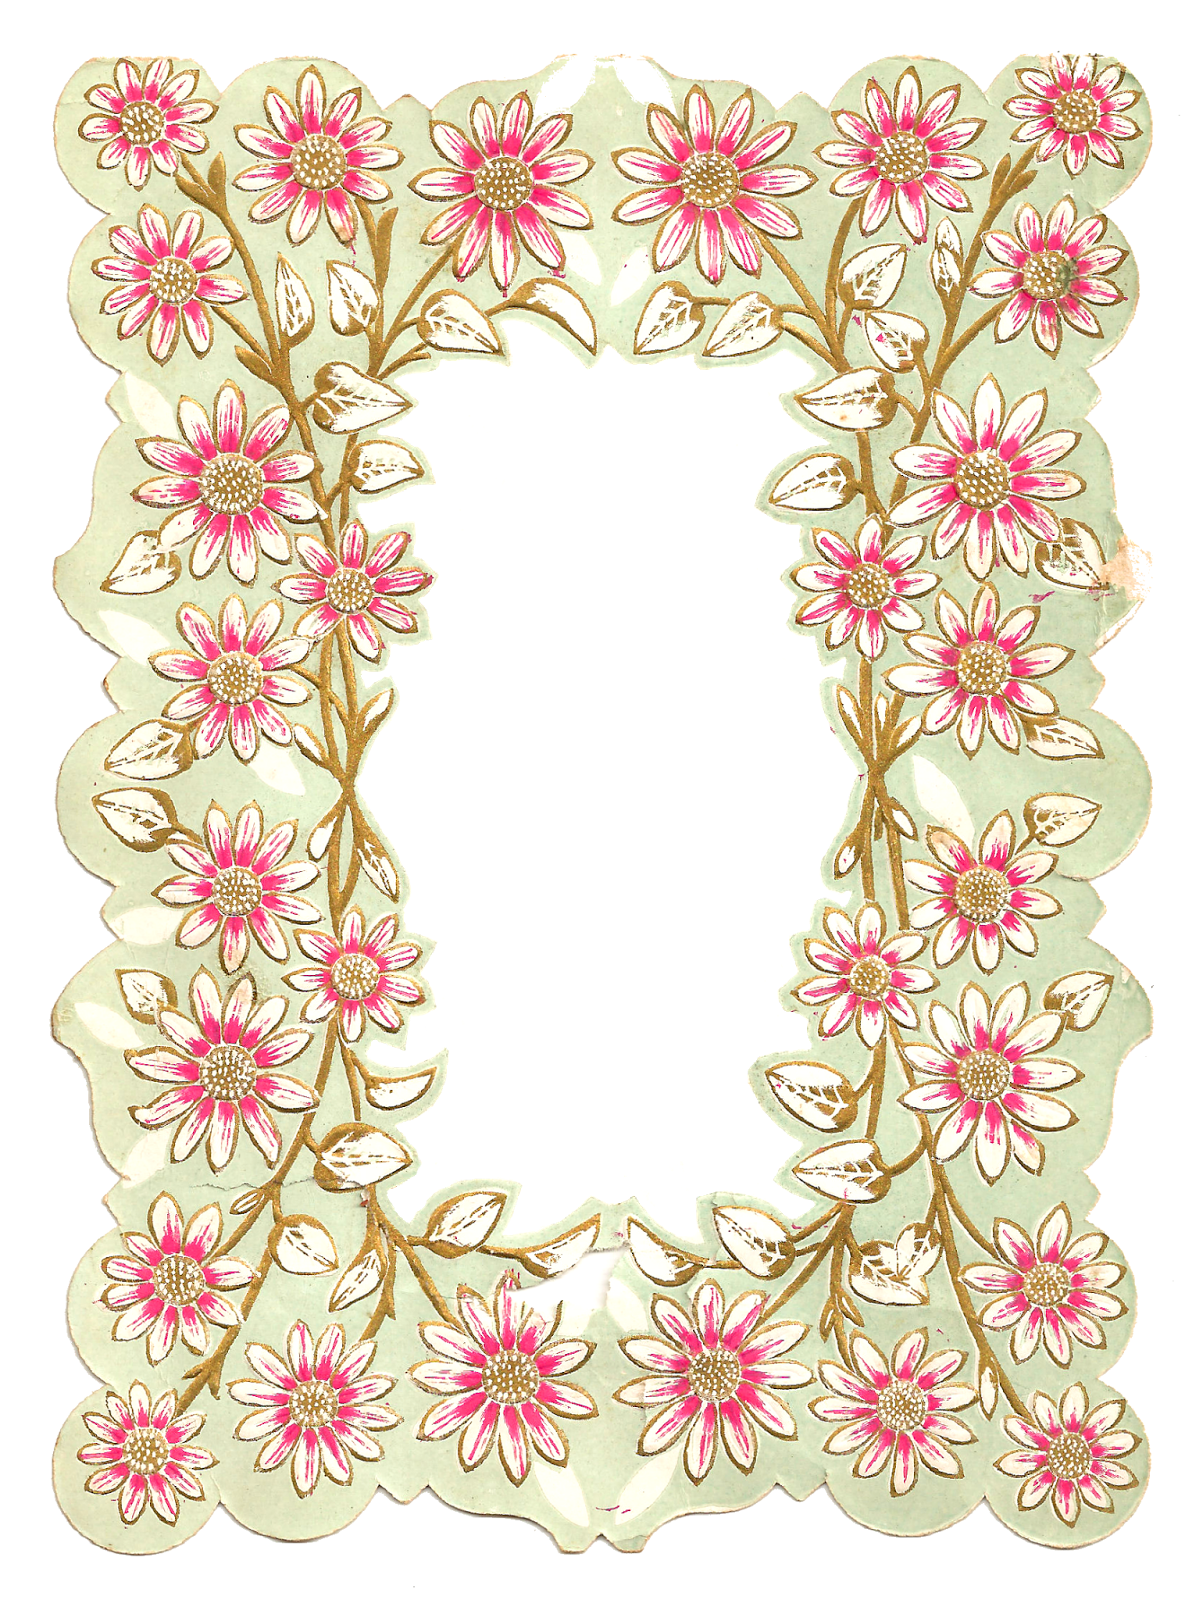 antique-images-digital-scrapbooking-paper-crafting-frame-flower-design